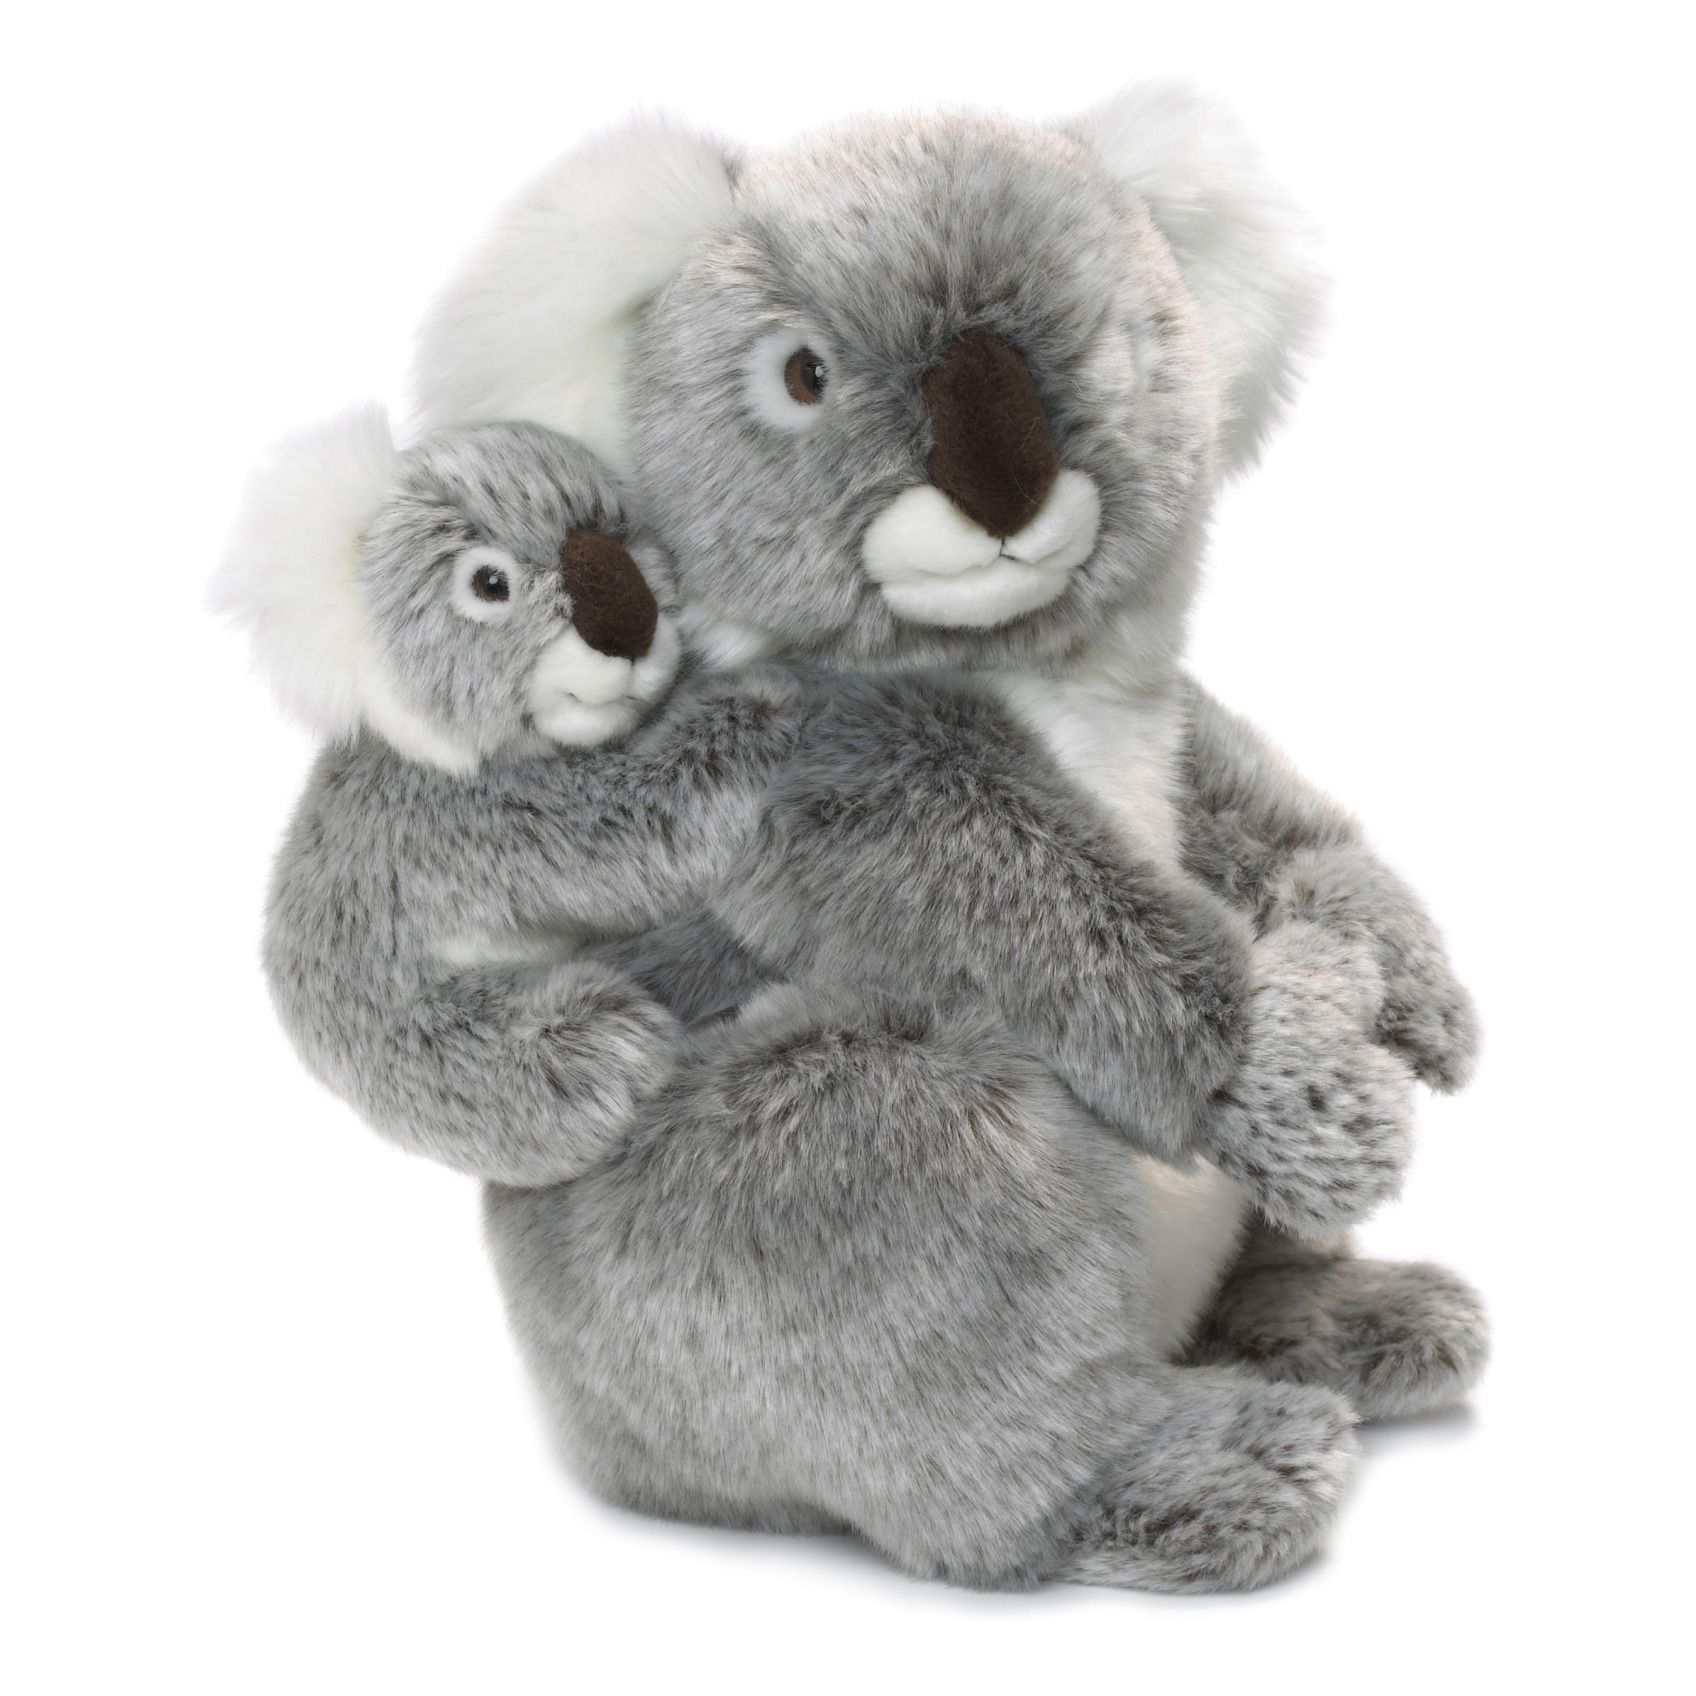 WWF - Peluche Maman Koala et son bébé - Gris